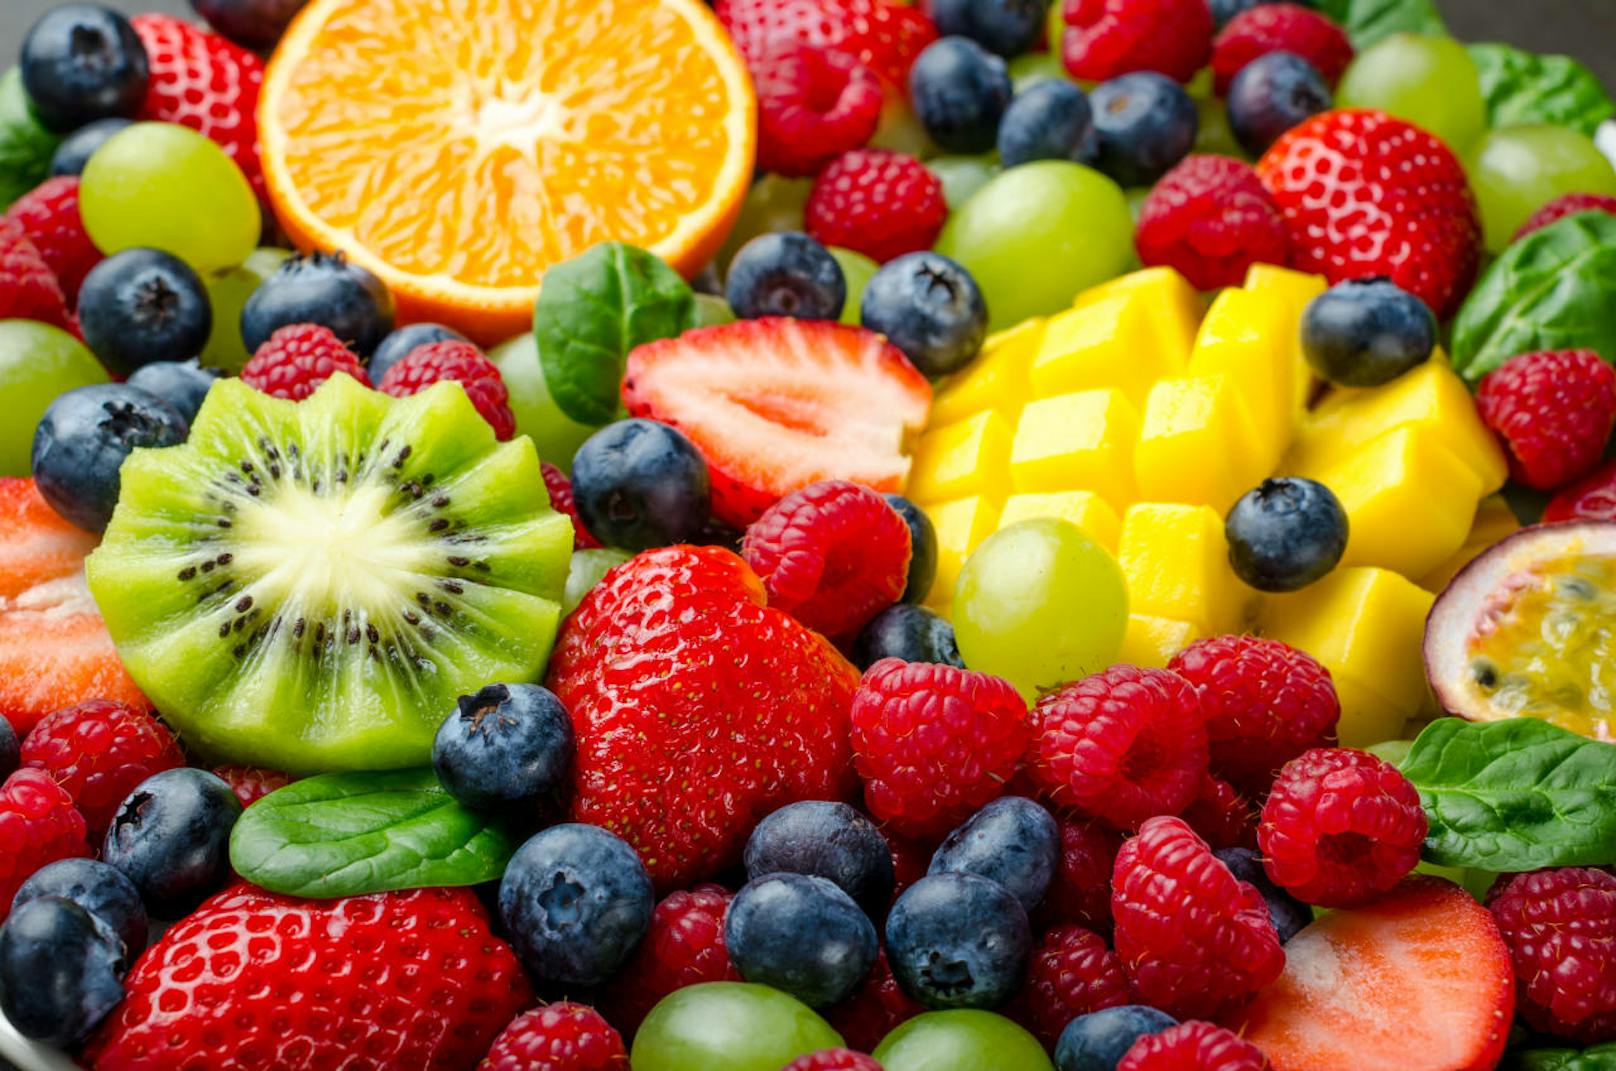 Das richtige Obst konsumieren - statt fructosehaltigen Obstsorten wie Weintrauben oder Bananen lieber Beeren und Kiwis